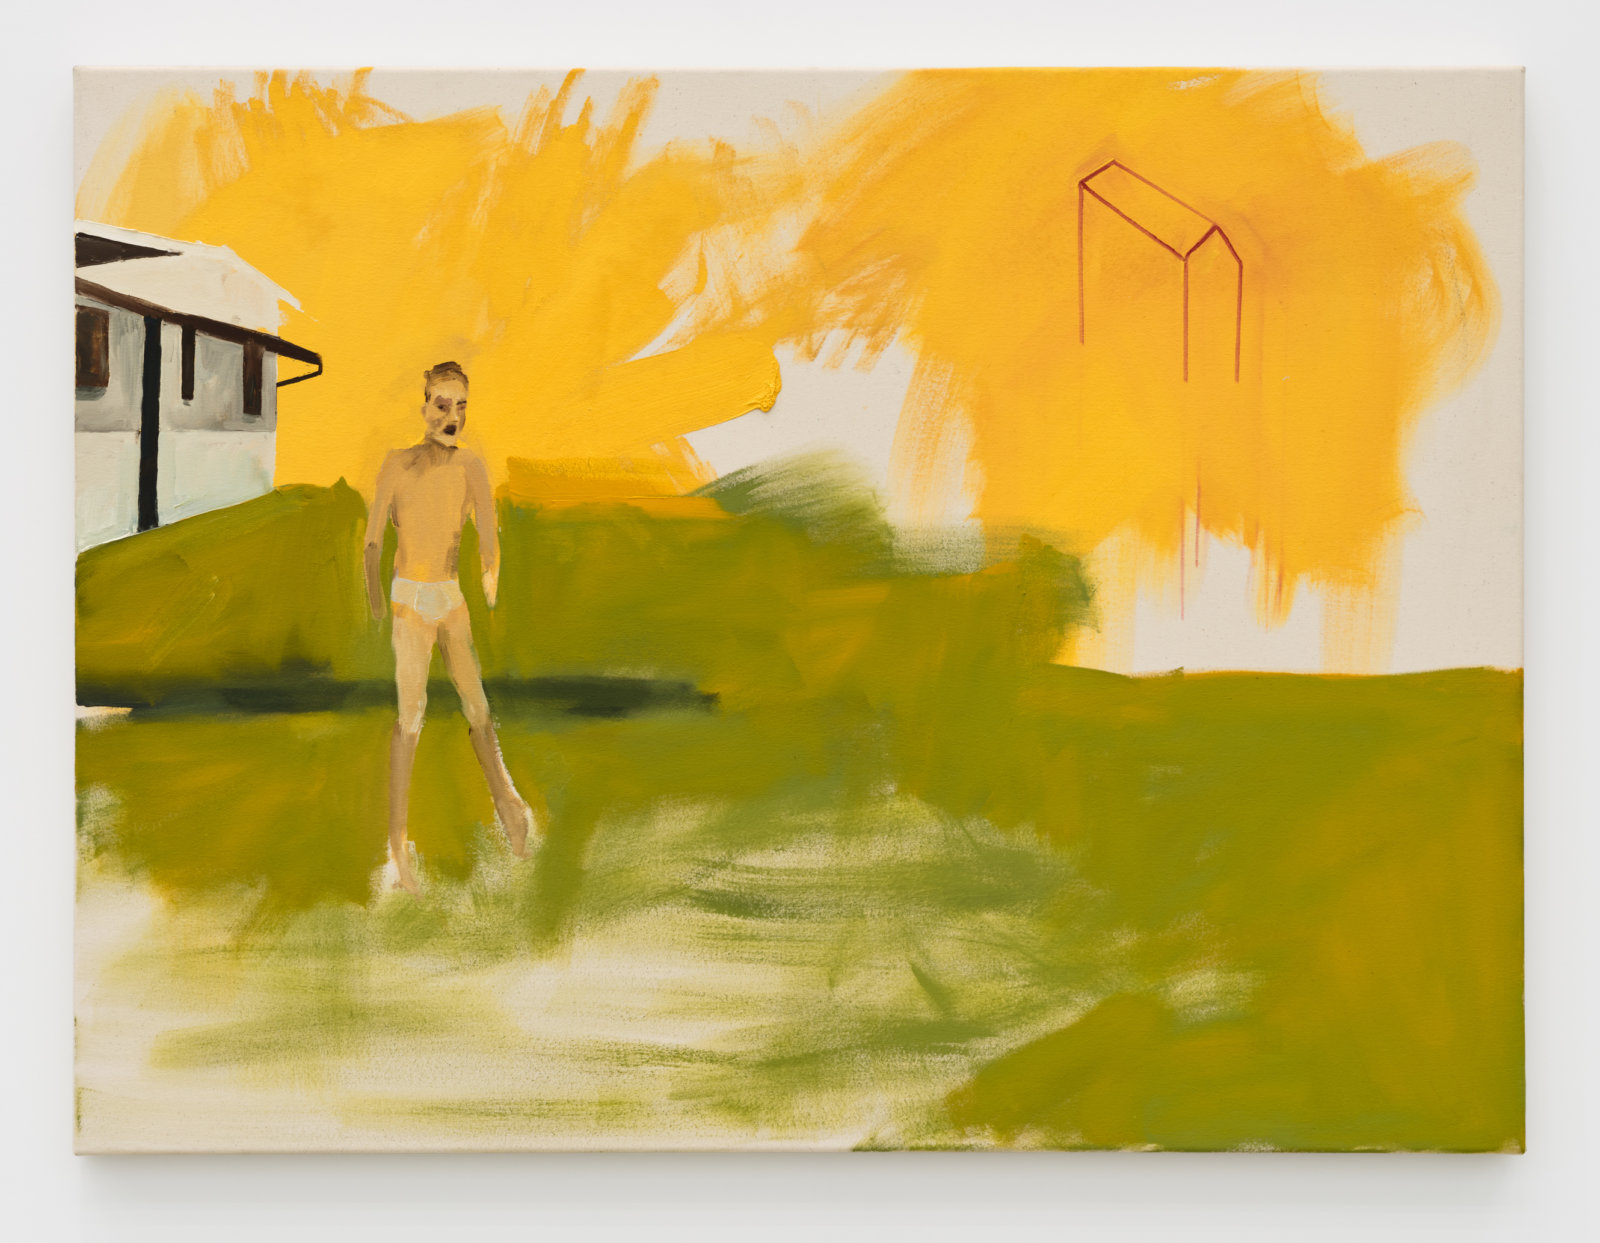 Brenda Draney, Evacuation, 2013, oil on canvas, 36 x 48 in. (91 x 122 cm)